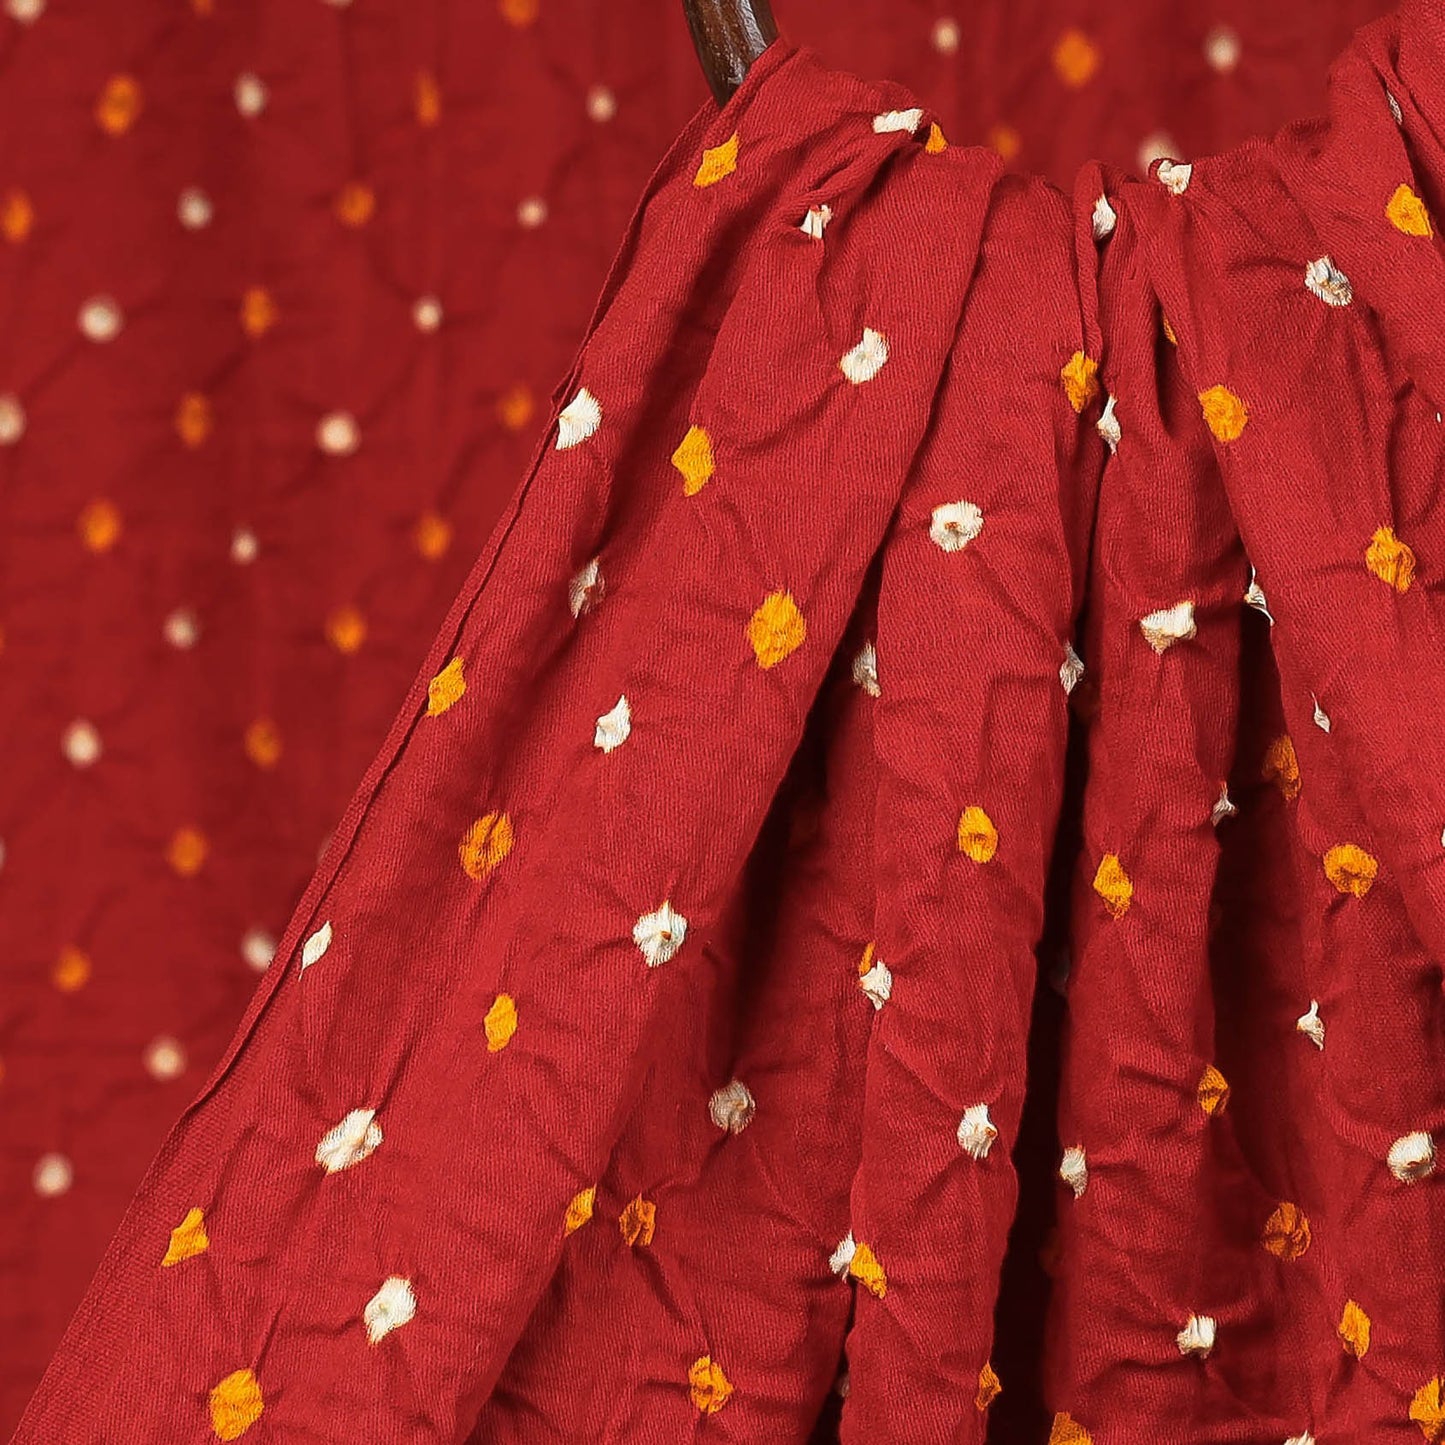 Bandhani Tie-Dye Fabrics